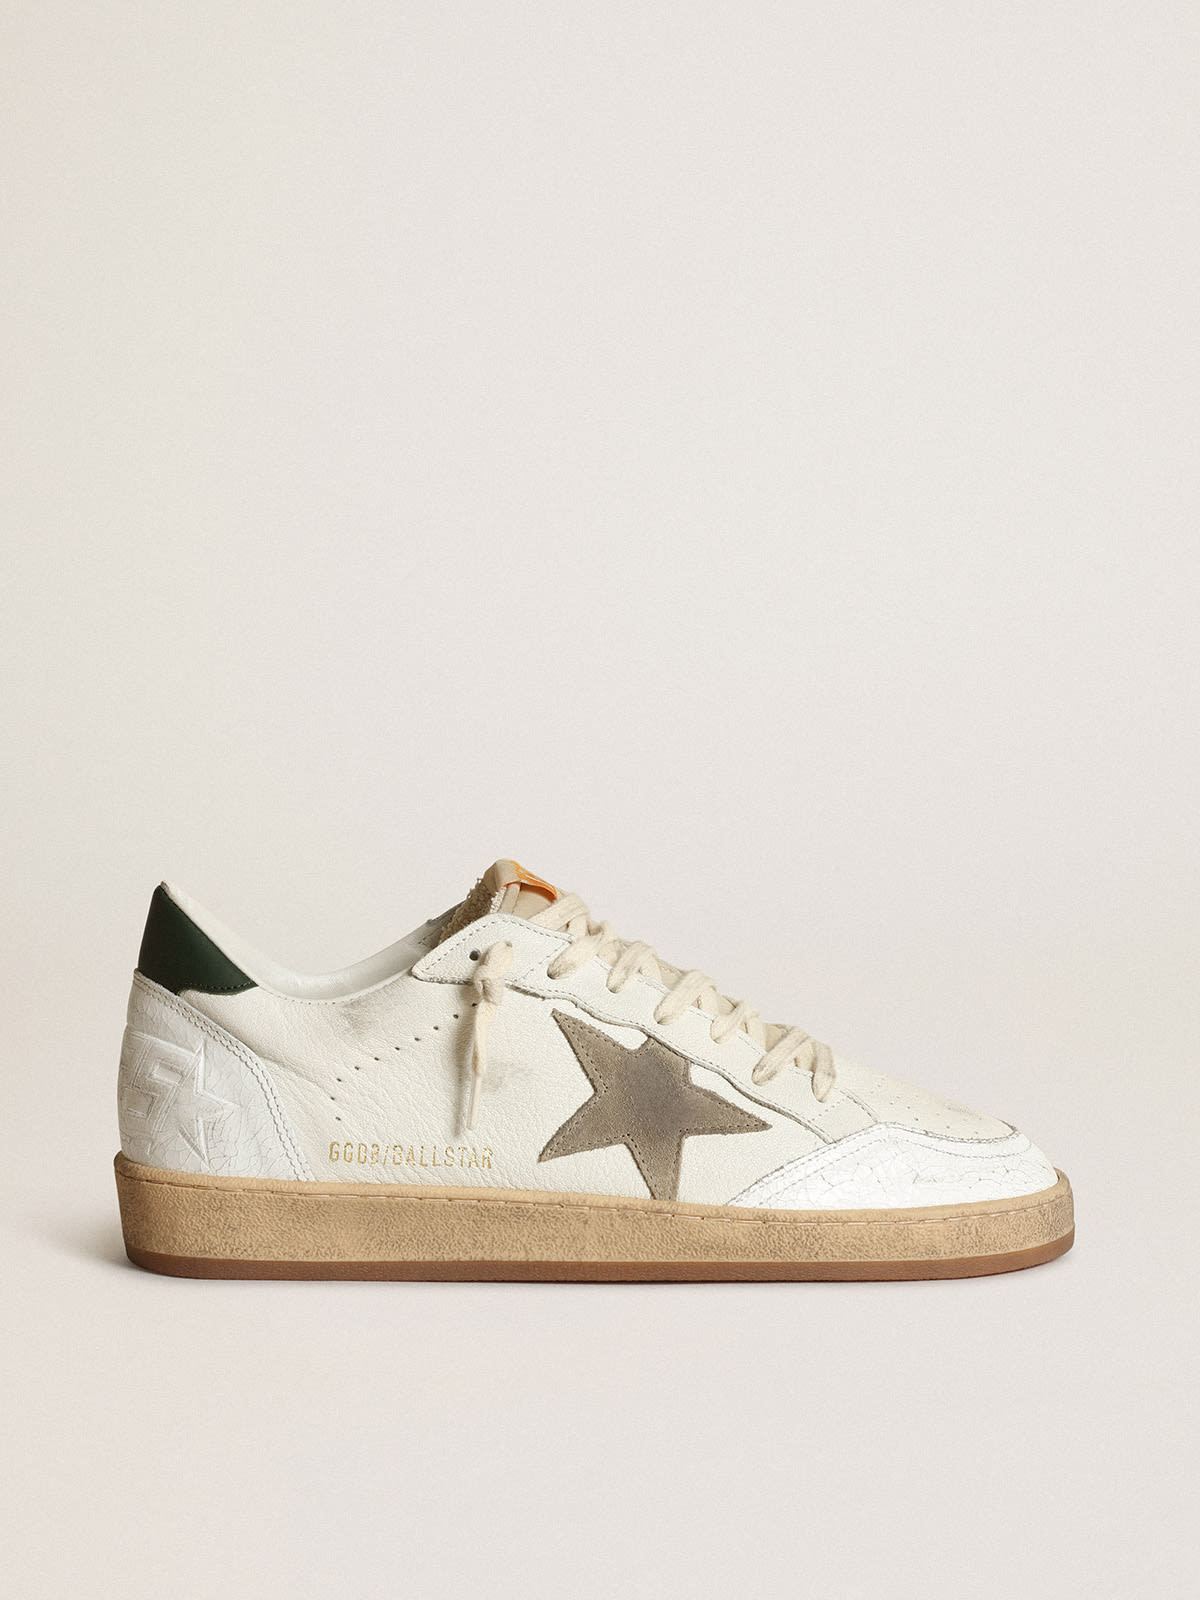 Golden Goose - Sneakers Ball Star en cuir nappa blanc avec étoile en daim couleur tourterelle et contrefort en cuir vert foncé in 